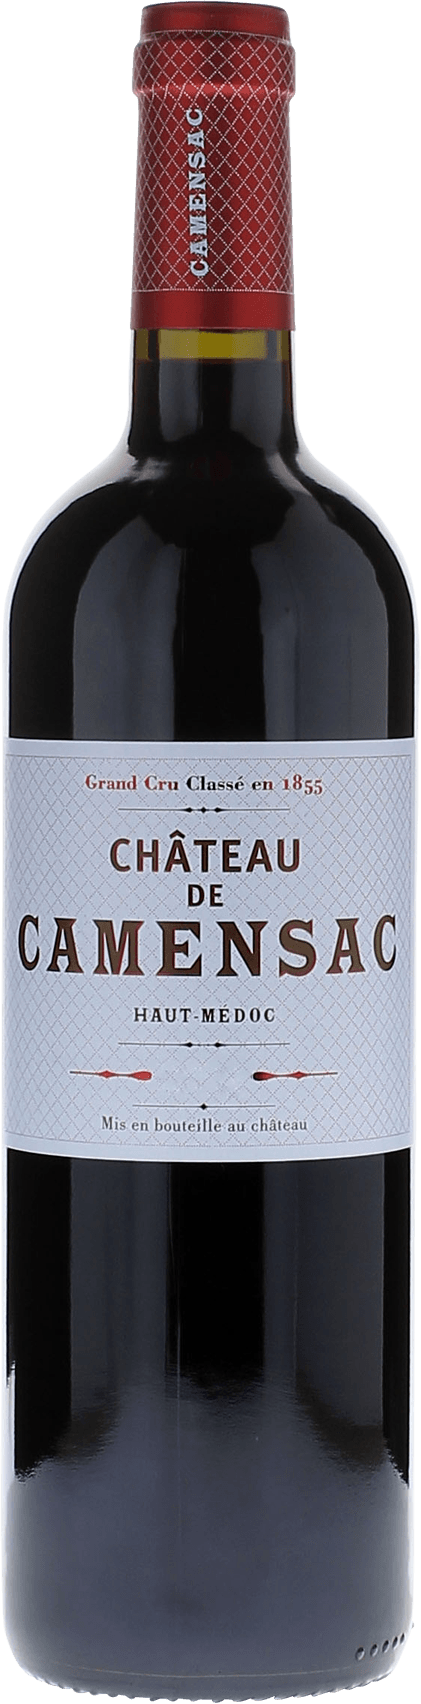 Camensac 1979 5me Grand cru class Mdoc, Bordeaux rouge